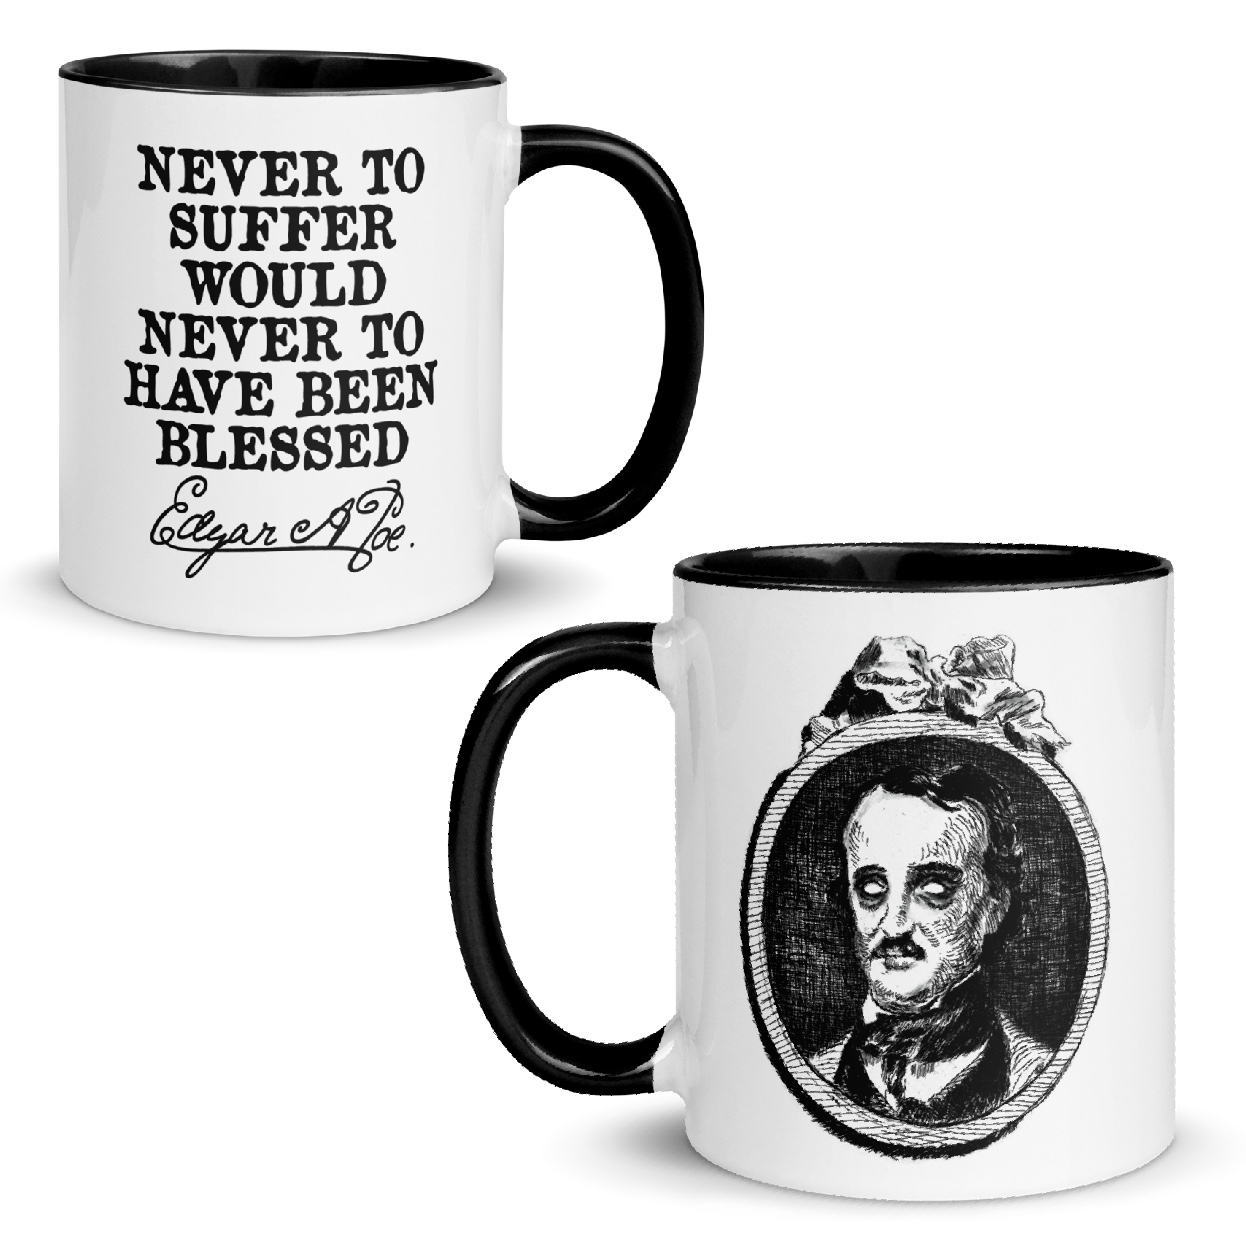 Never to suffer, E.A.Poe - Mug